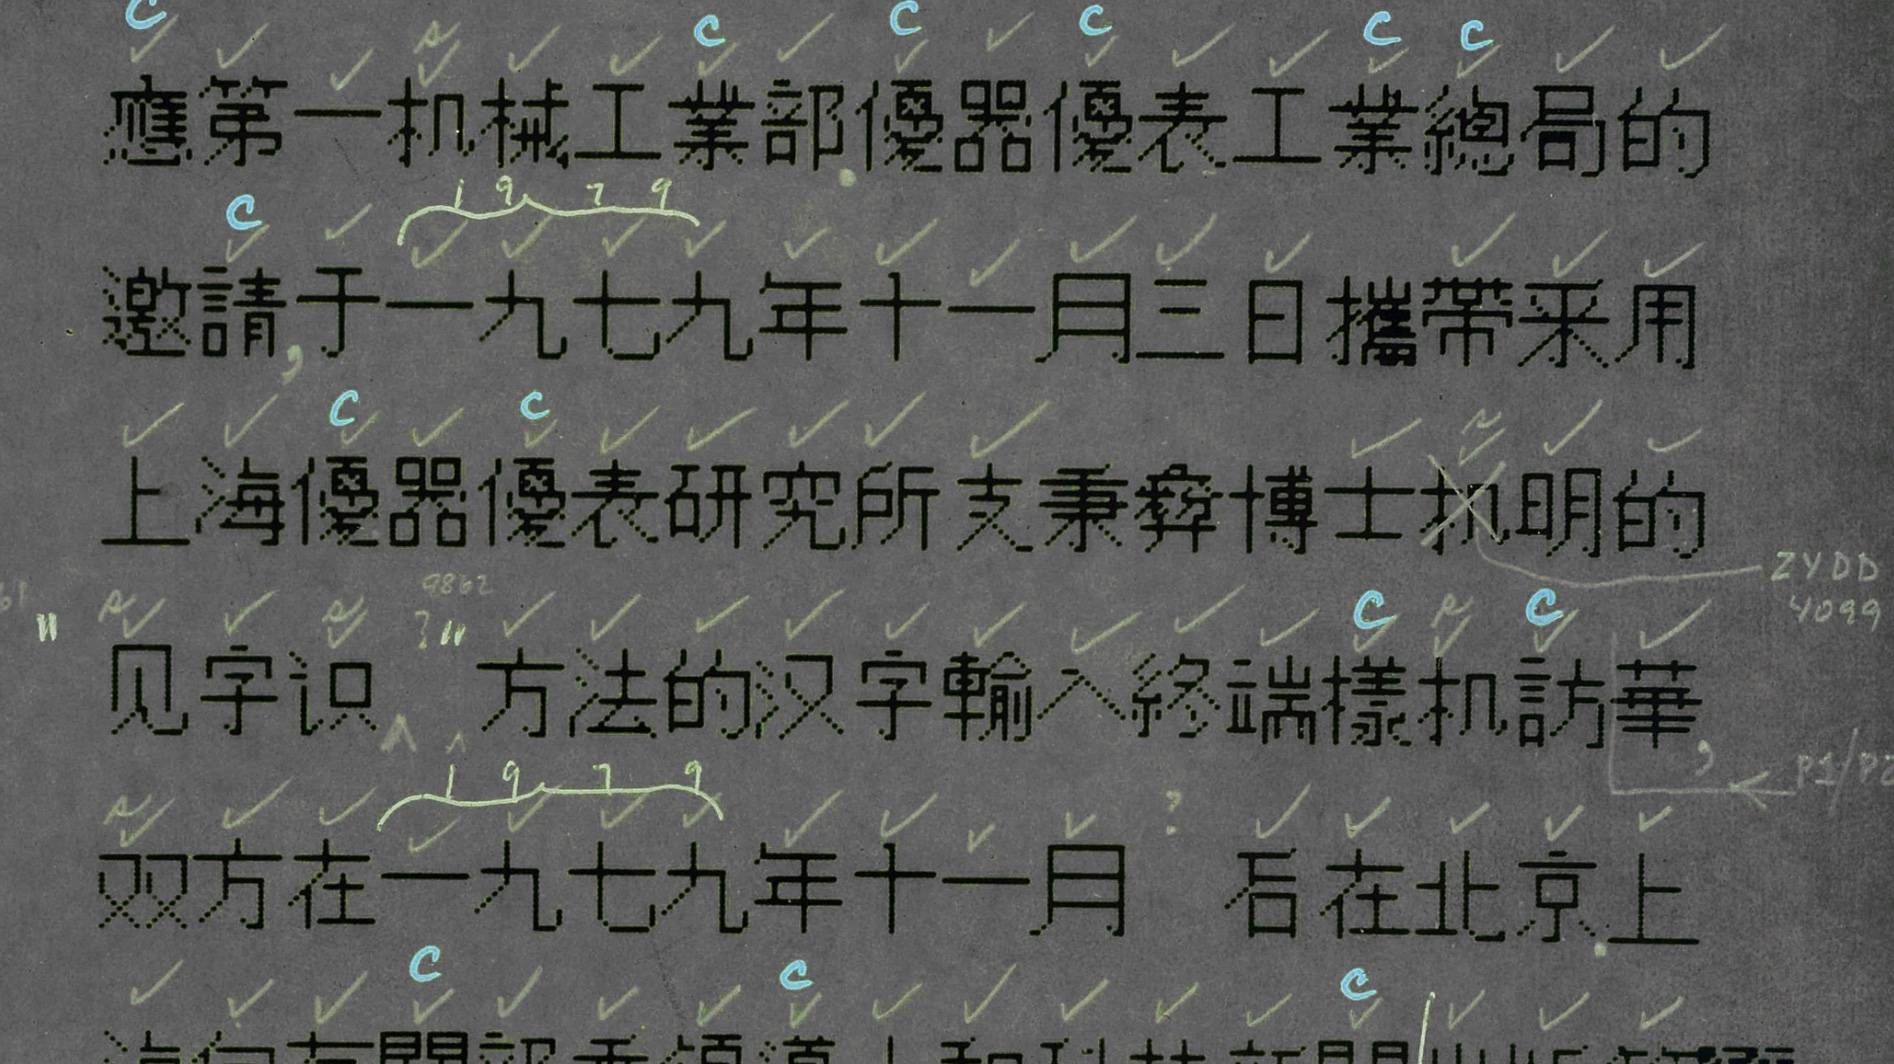 揭秘首批中文电脑字体诞生过程 将汉字 搬 进数码设备有多难 爱范儿